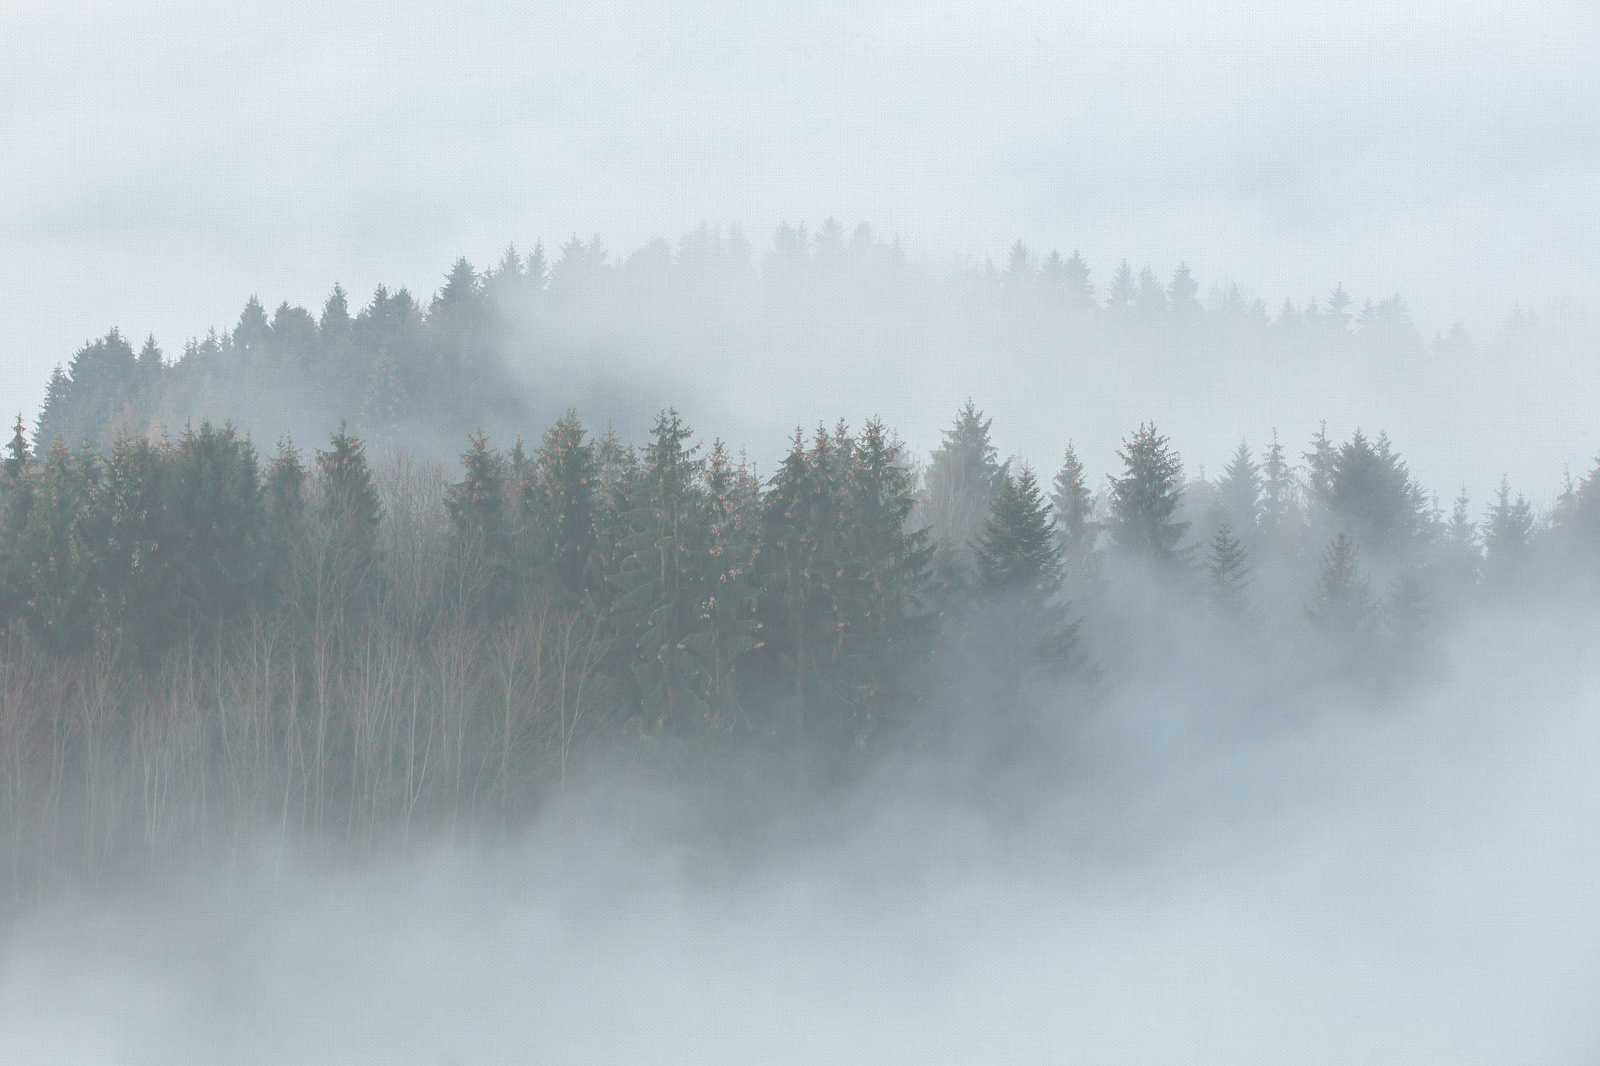             Tela con bosco misterioso nella nebbia - 0,90 m x 0,60 m
        